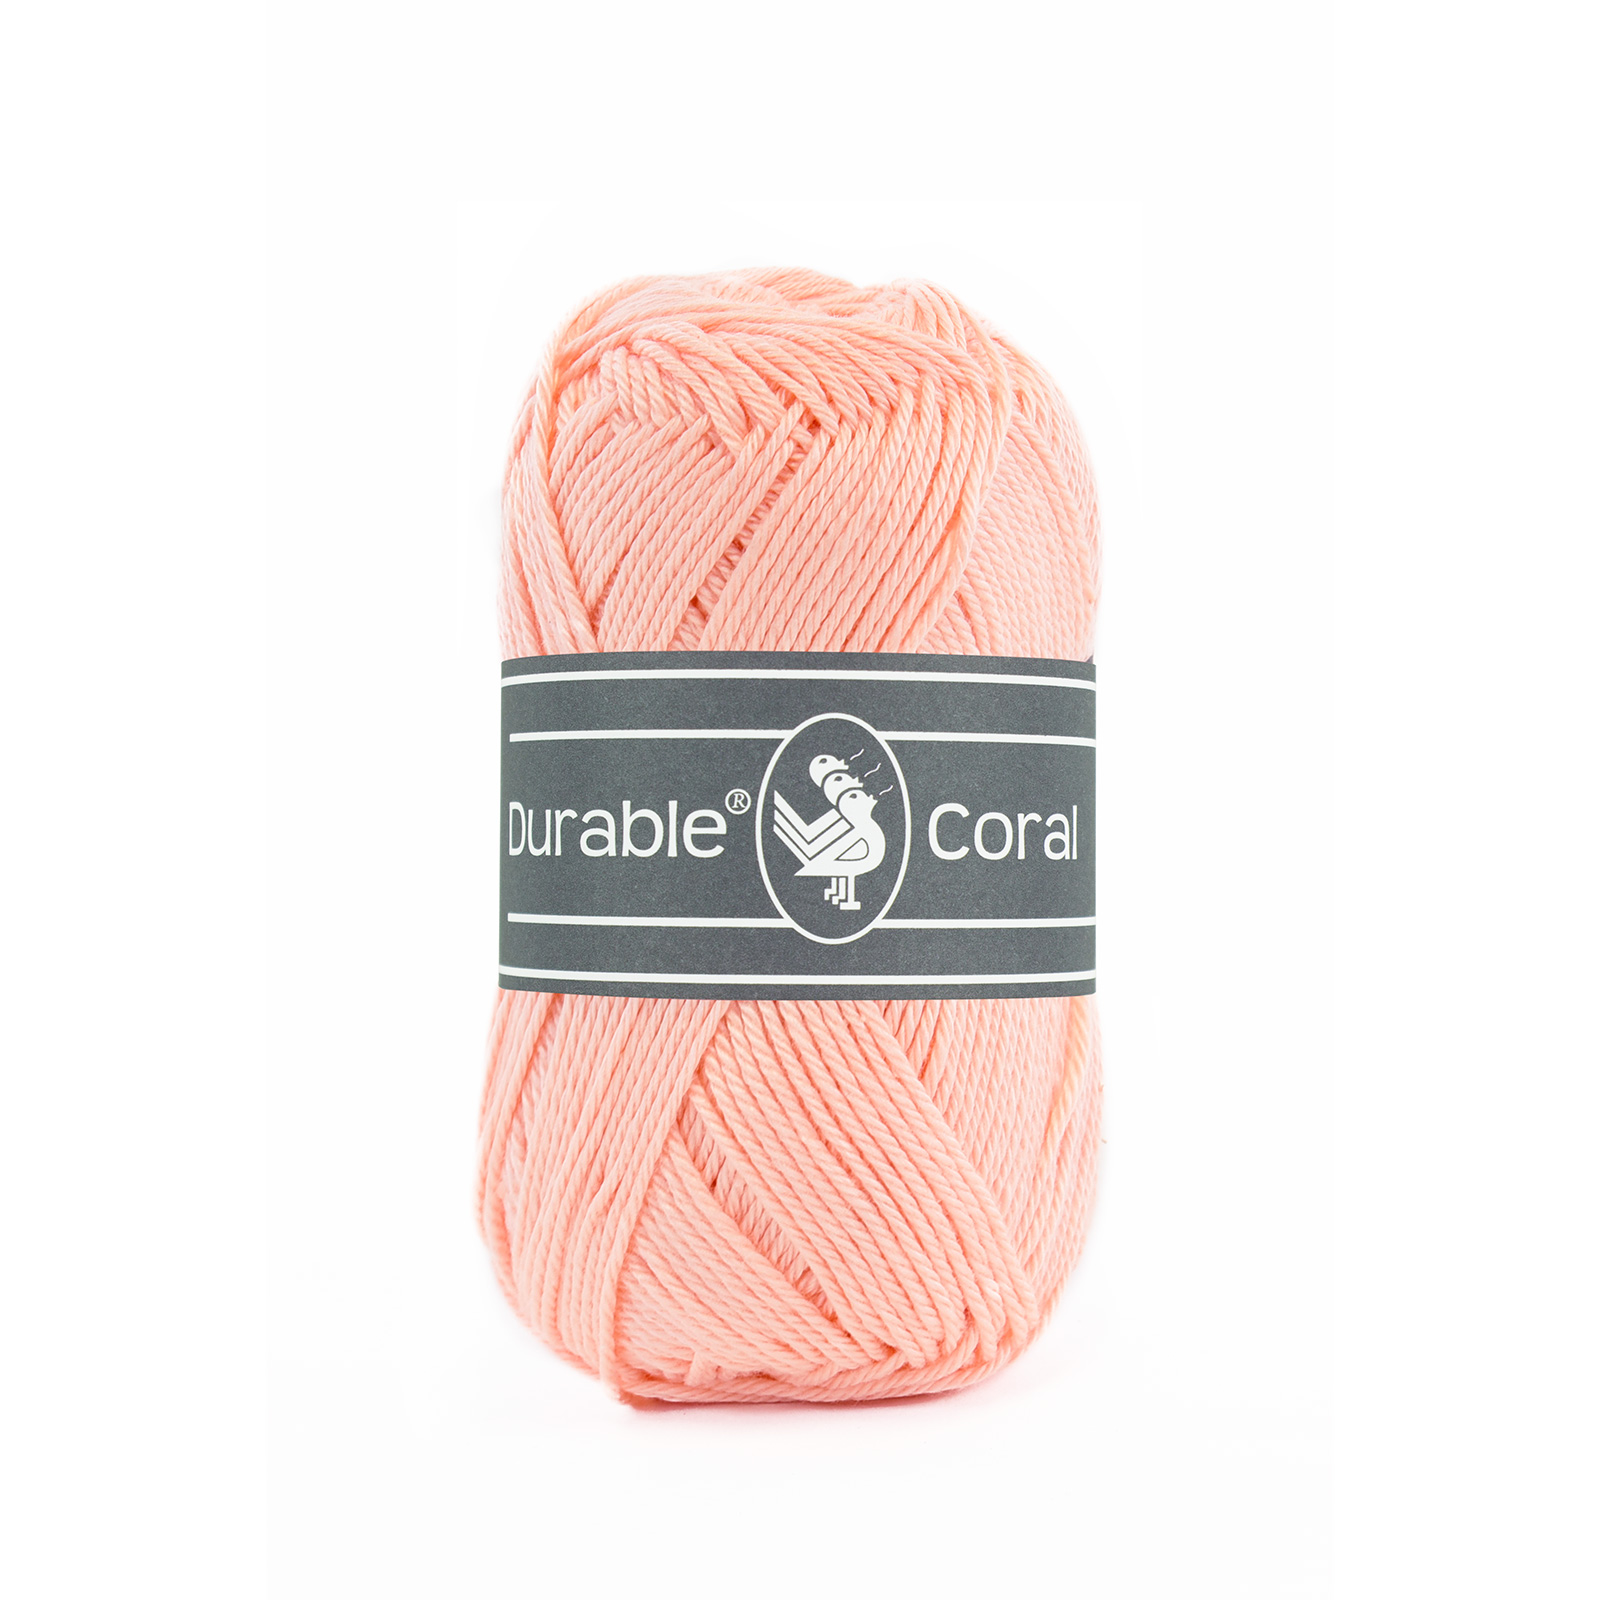 Durable Coral Peach-211